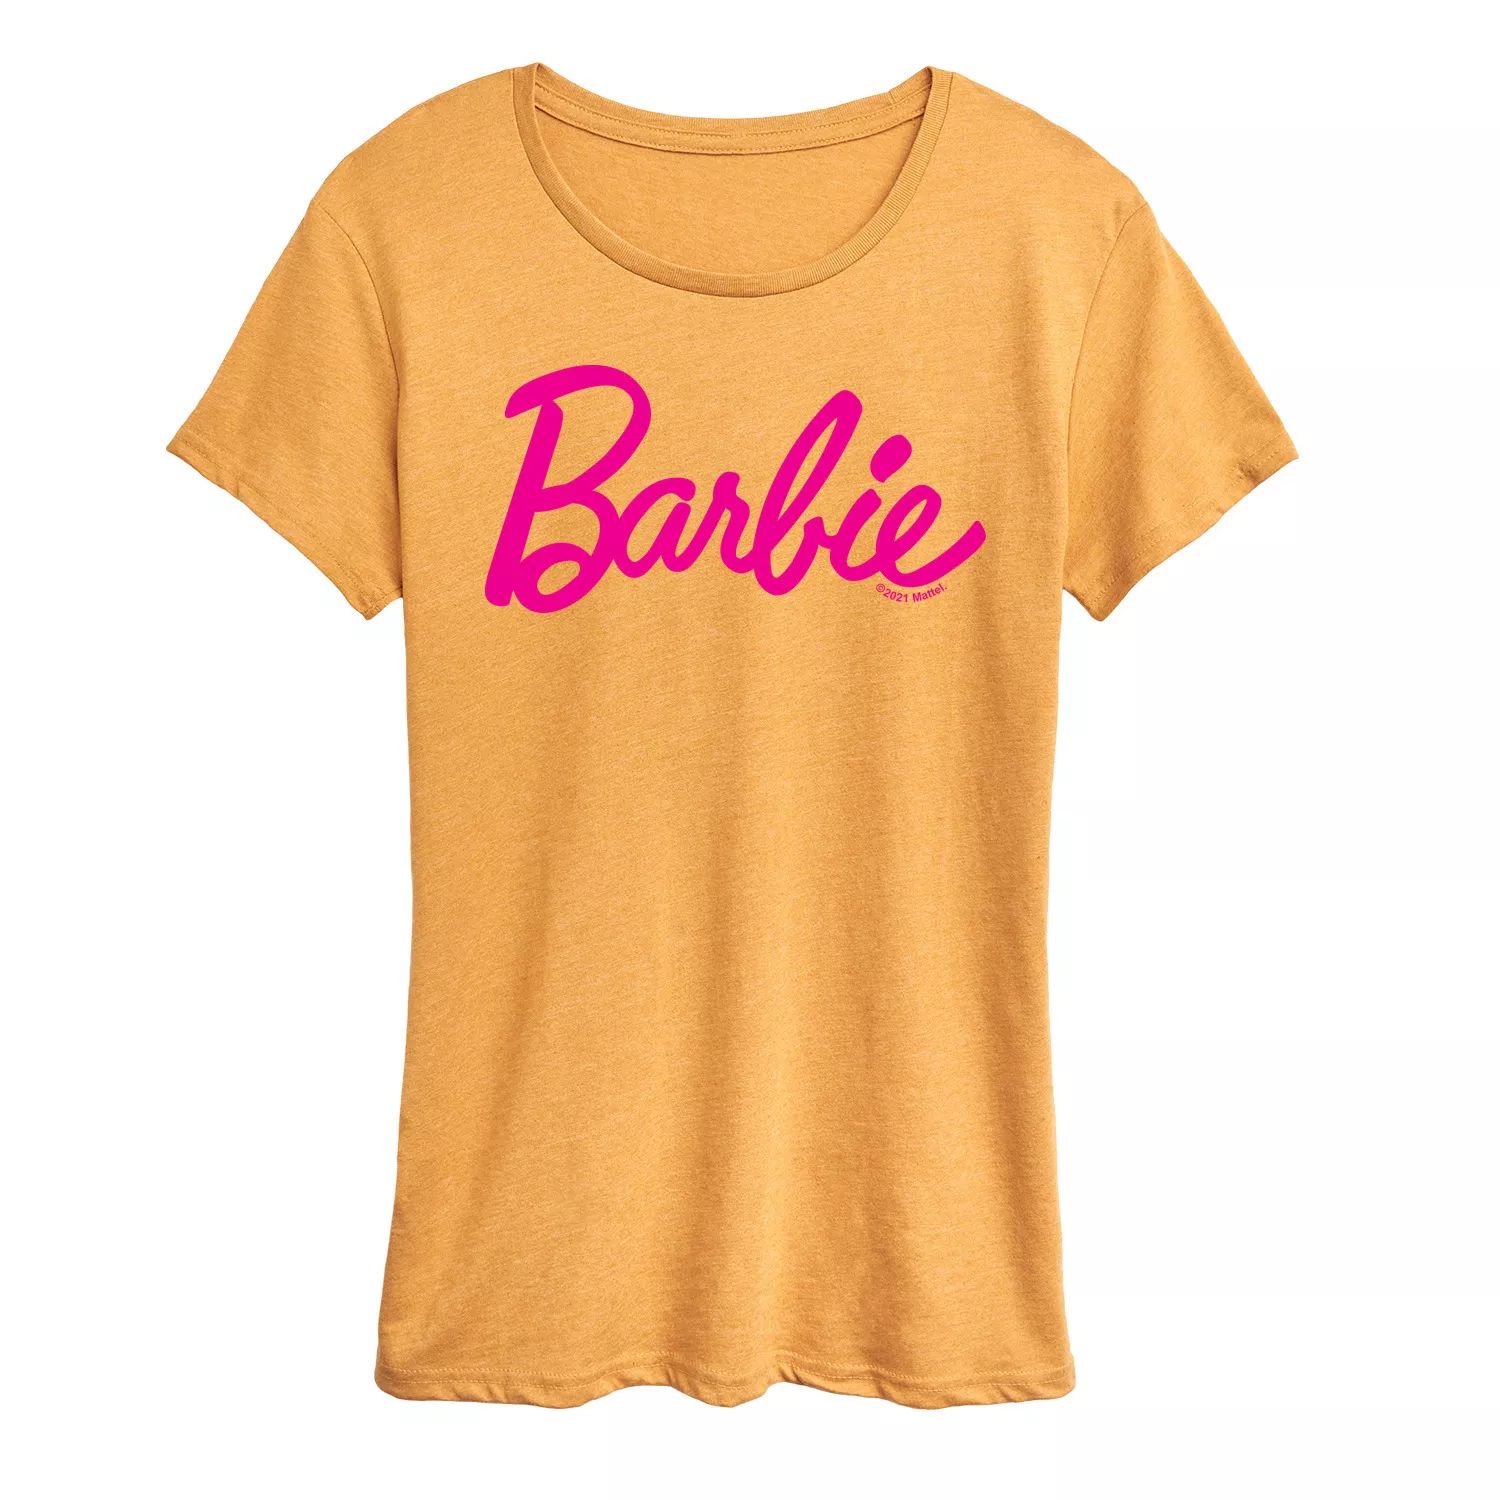 Классическая футболка с логотипом Barbie для юниоров Licensed Character майка с рисунком floral meadow женская smartwool цвет almond heather